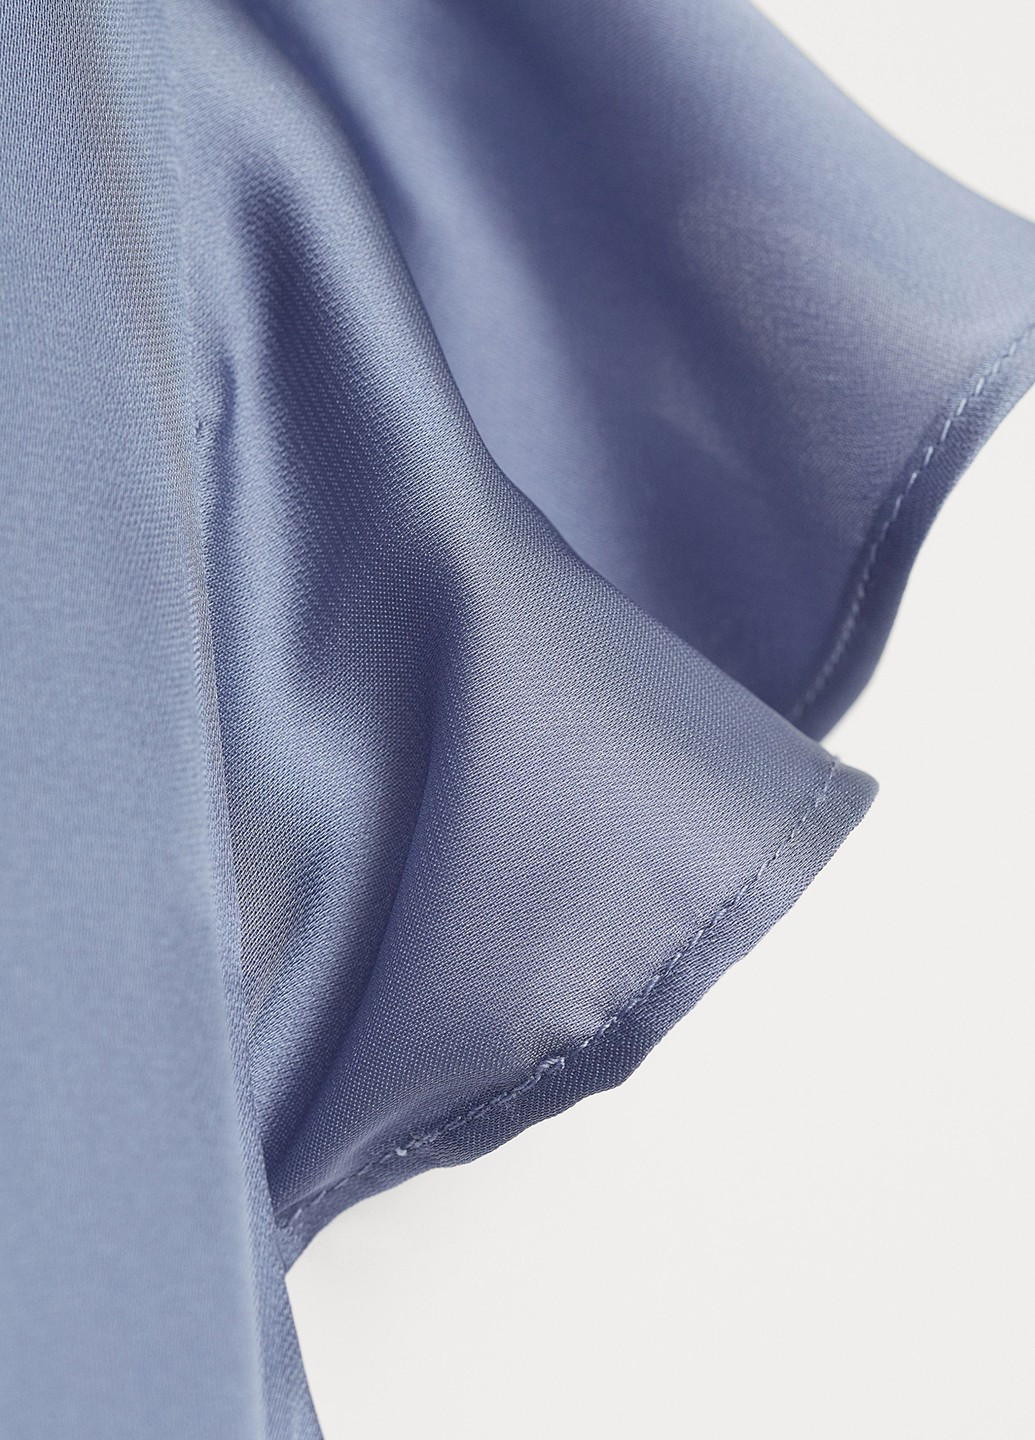 Серо-голубое коктейльное платье H&M однотонное